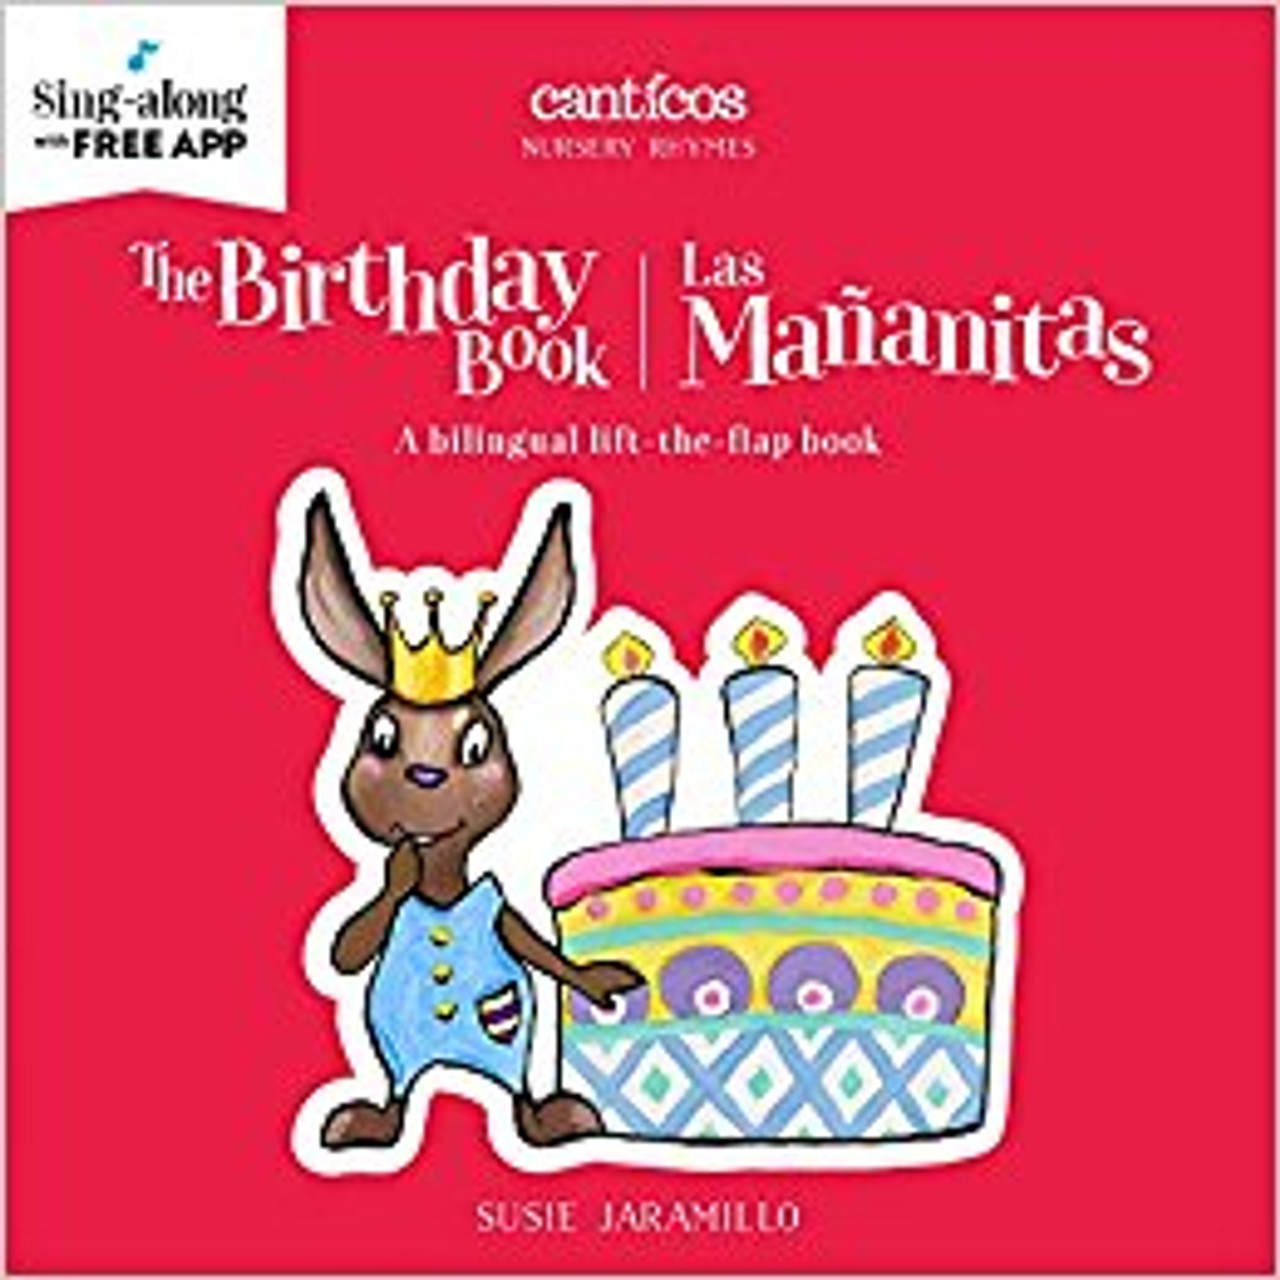 The Birthday Book/Las Mananitas by Susie Jaramillo